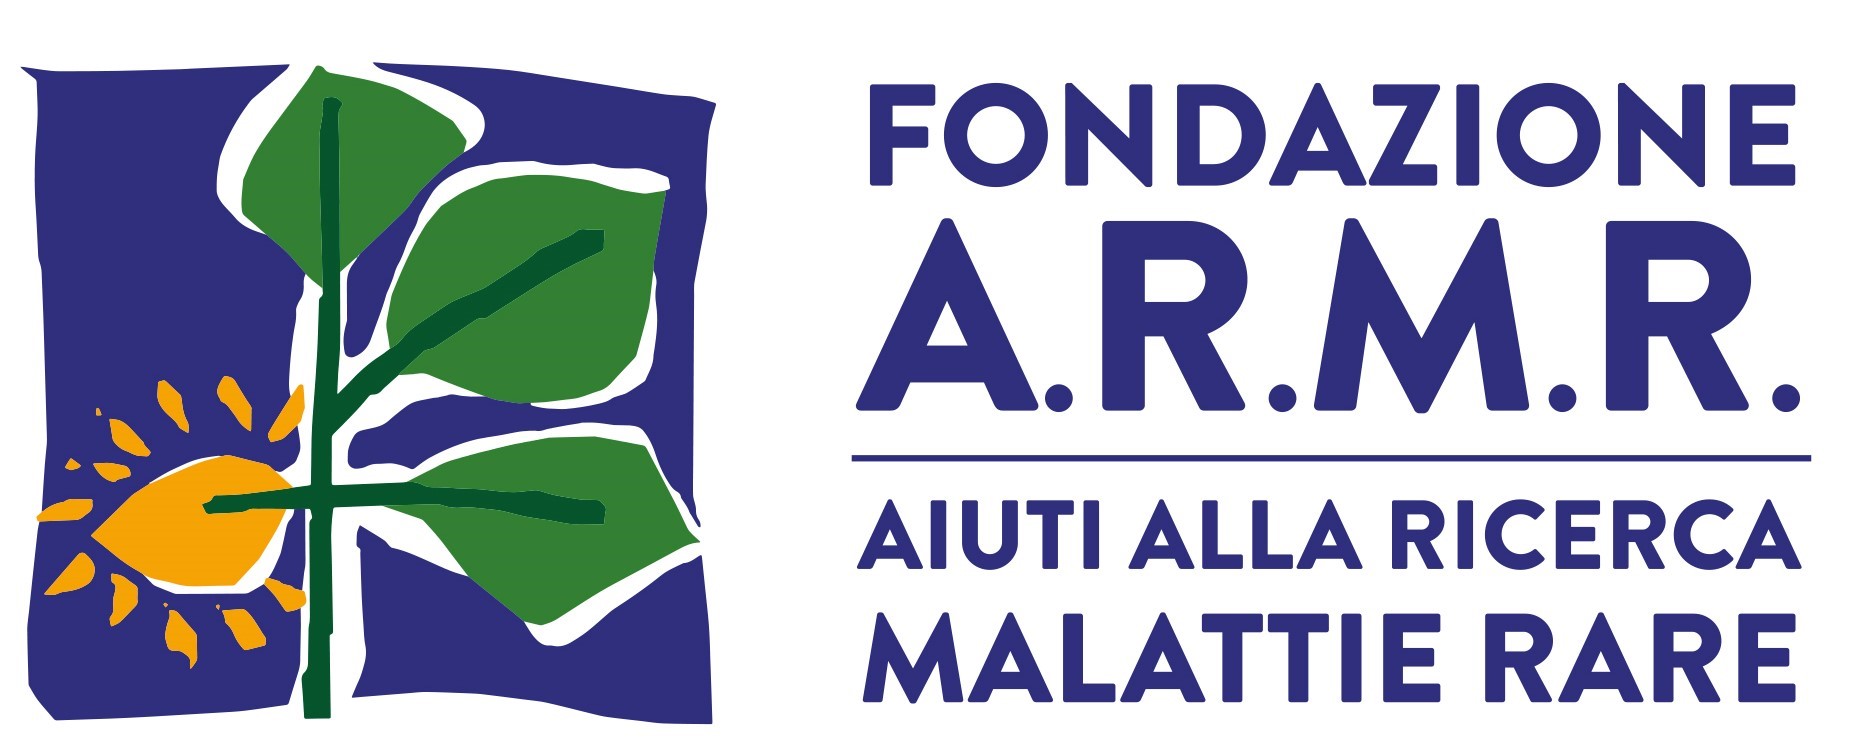 A.R.M.R. logo